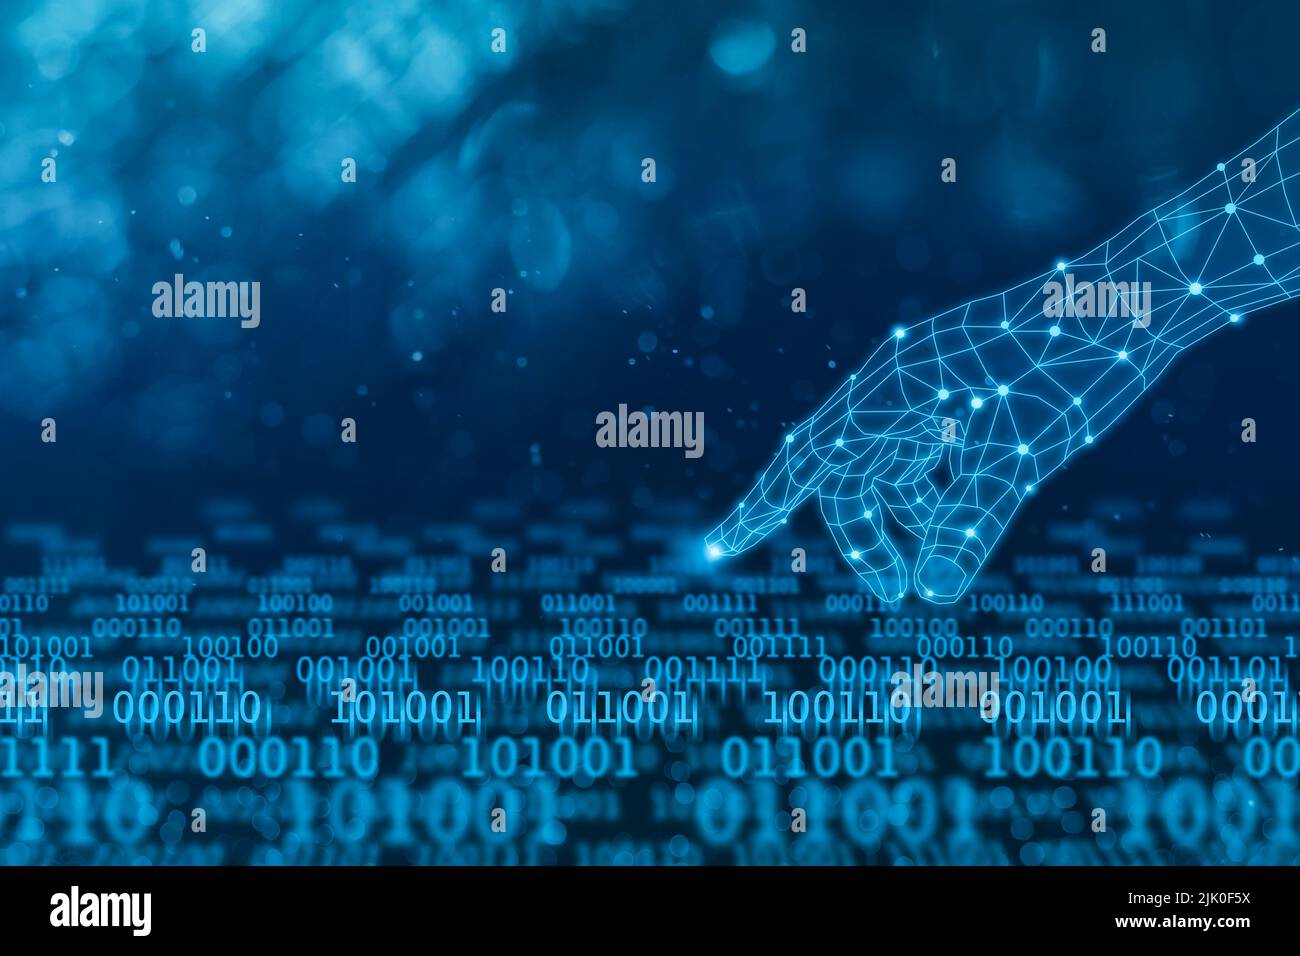 La main numérique touchant le flux de données binaires sur fond bleu foncé, concept de technologie abstrait Banque D'Images